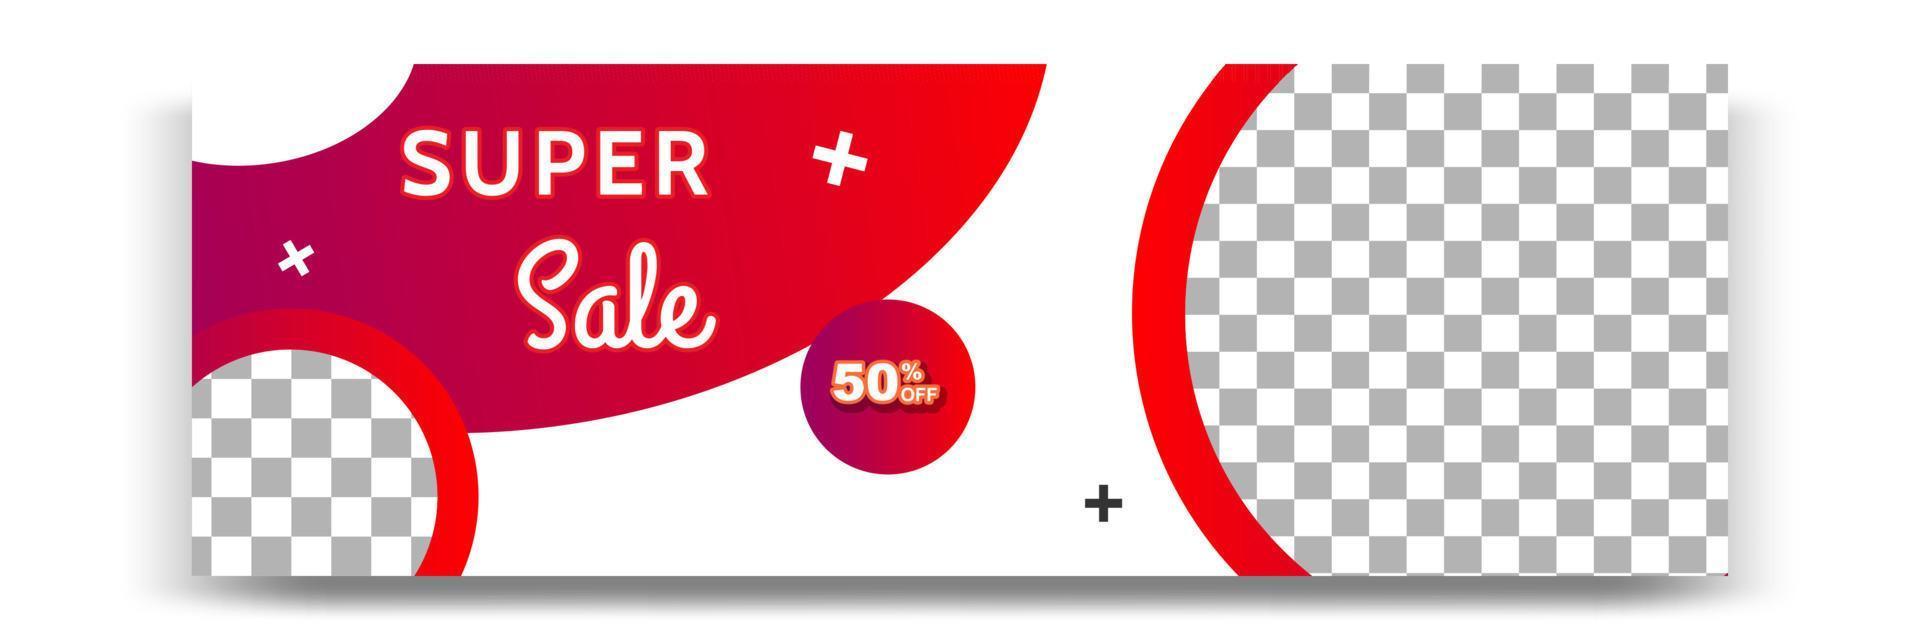 abstracte gradiënt moderne geometrische banner sjabloonontwerp in rode kleurenpalet combinatie. geschikt voor reclame en promotie in post op sociale media, blog, web, omslag, koptekst. vector